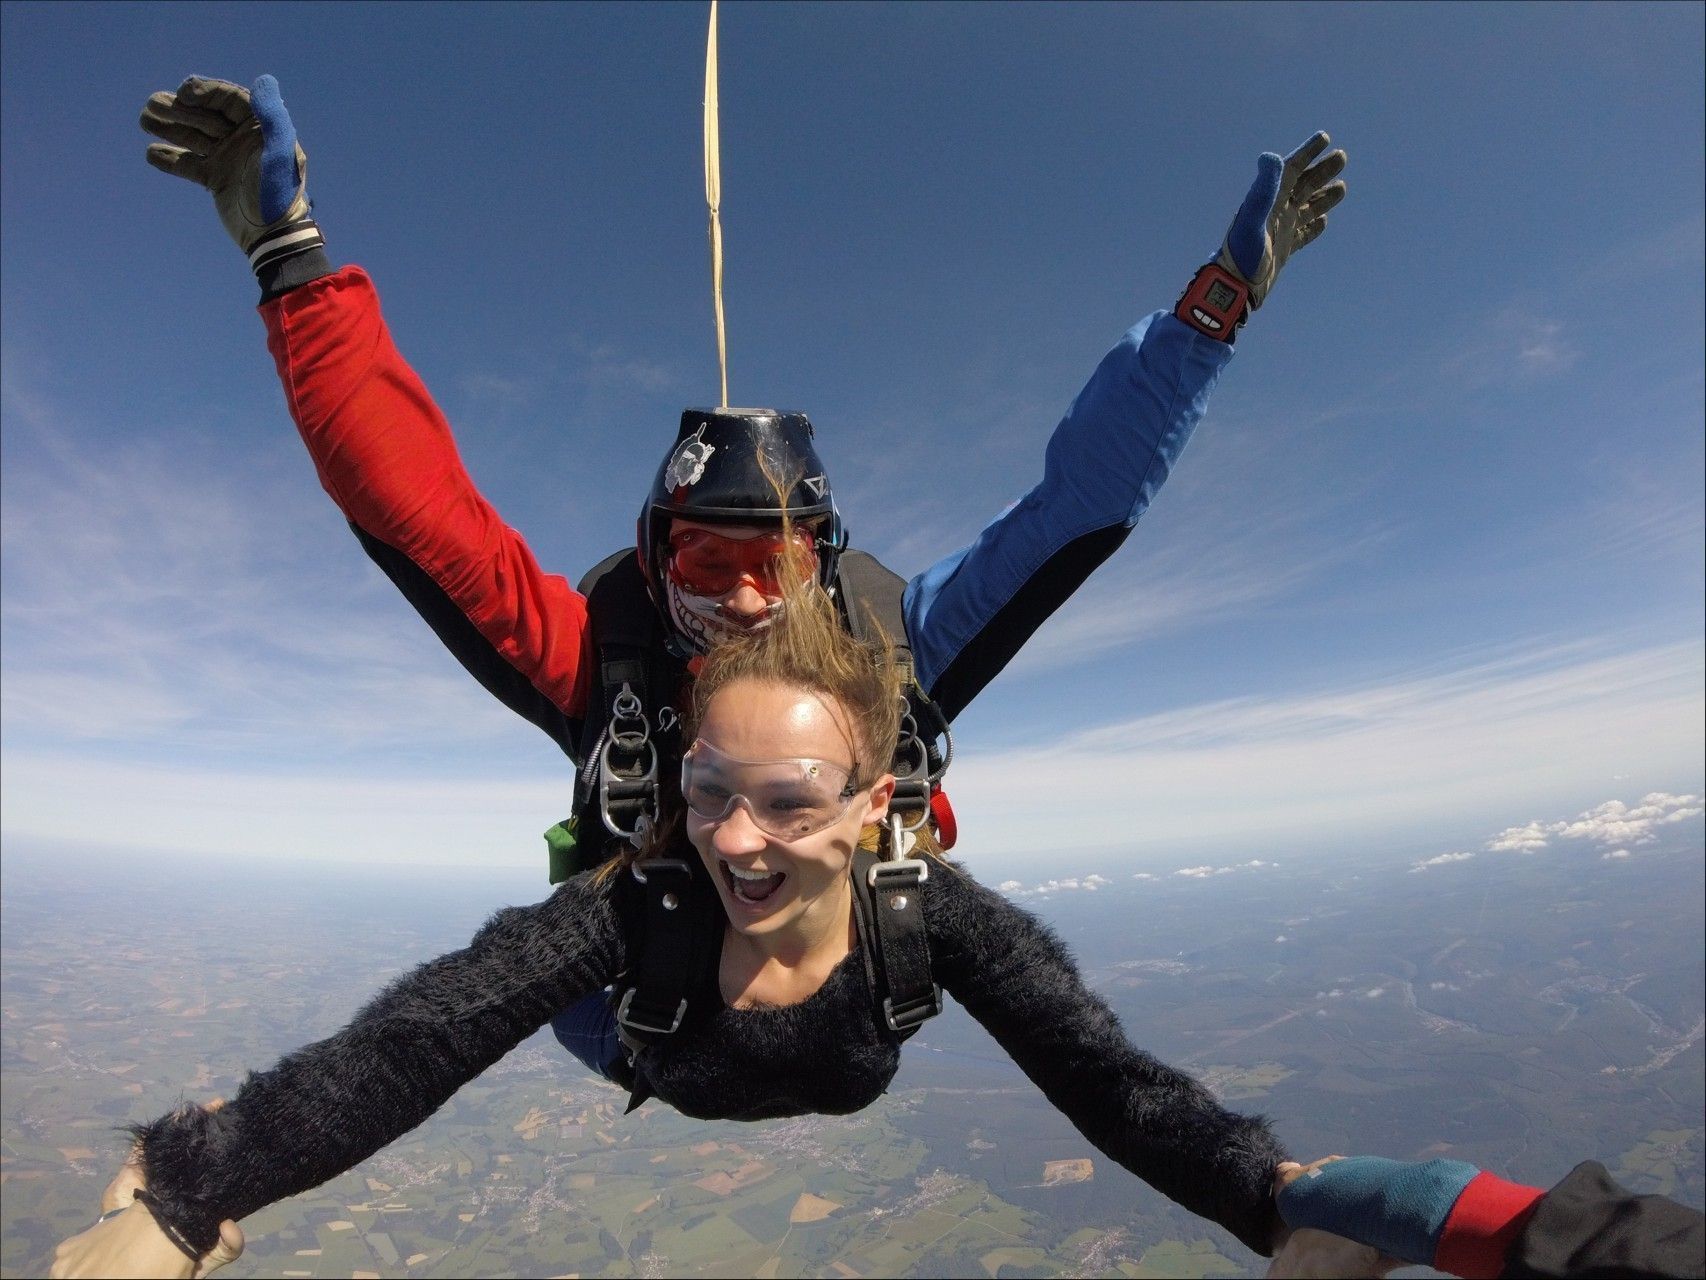 AIR PARACHUTISME - Reims : saut en parachute